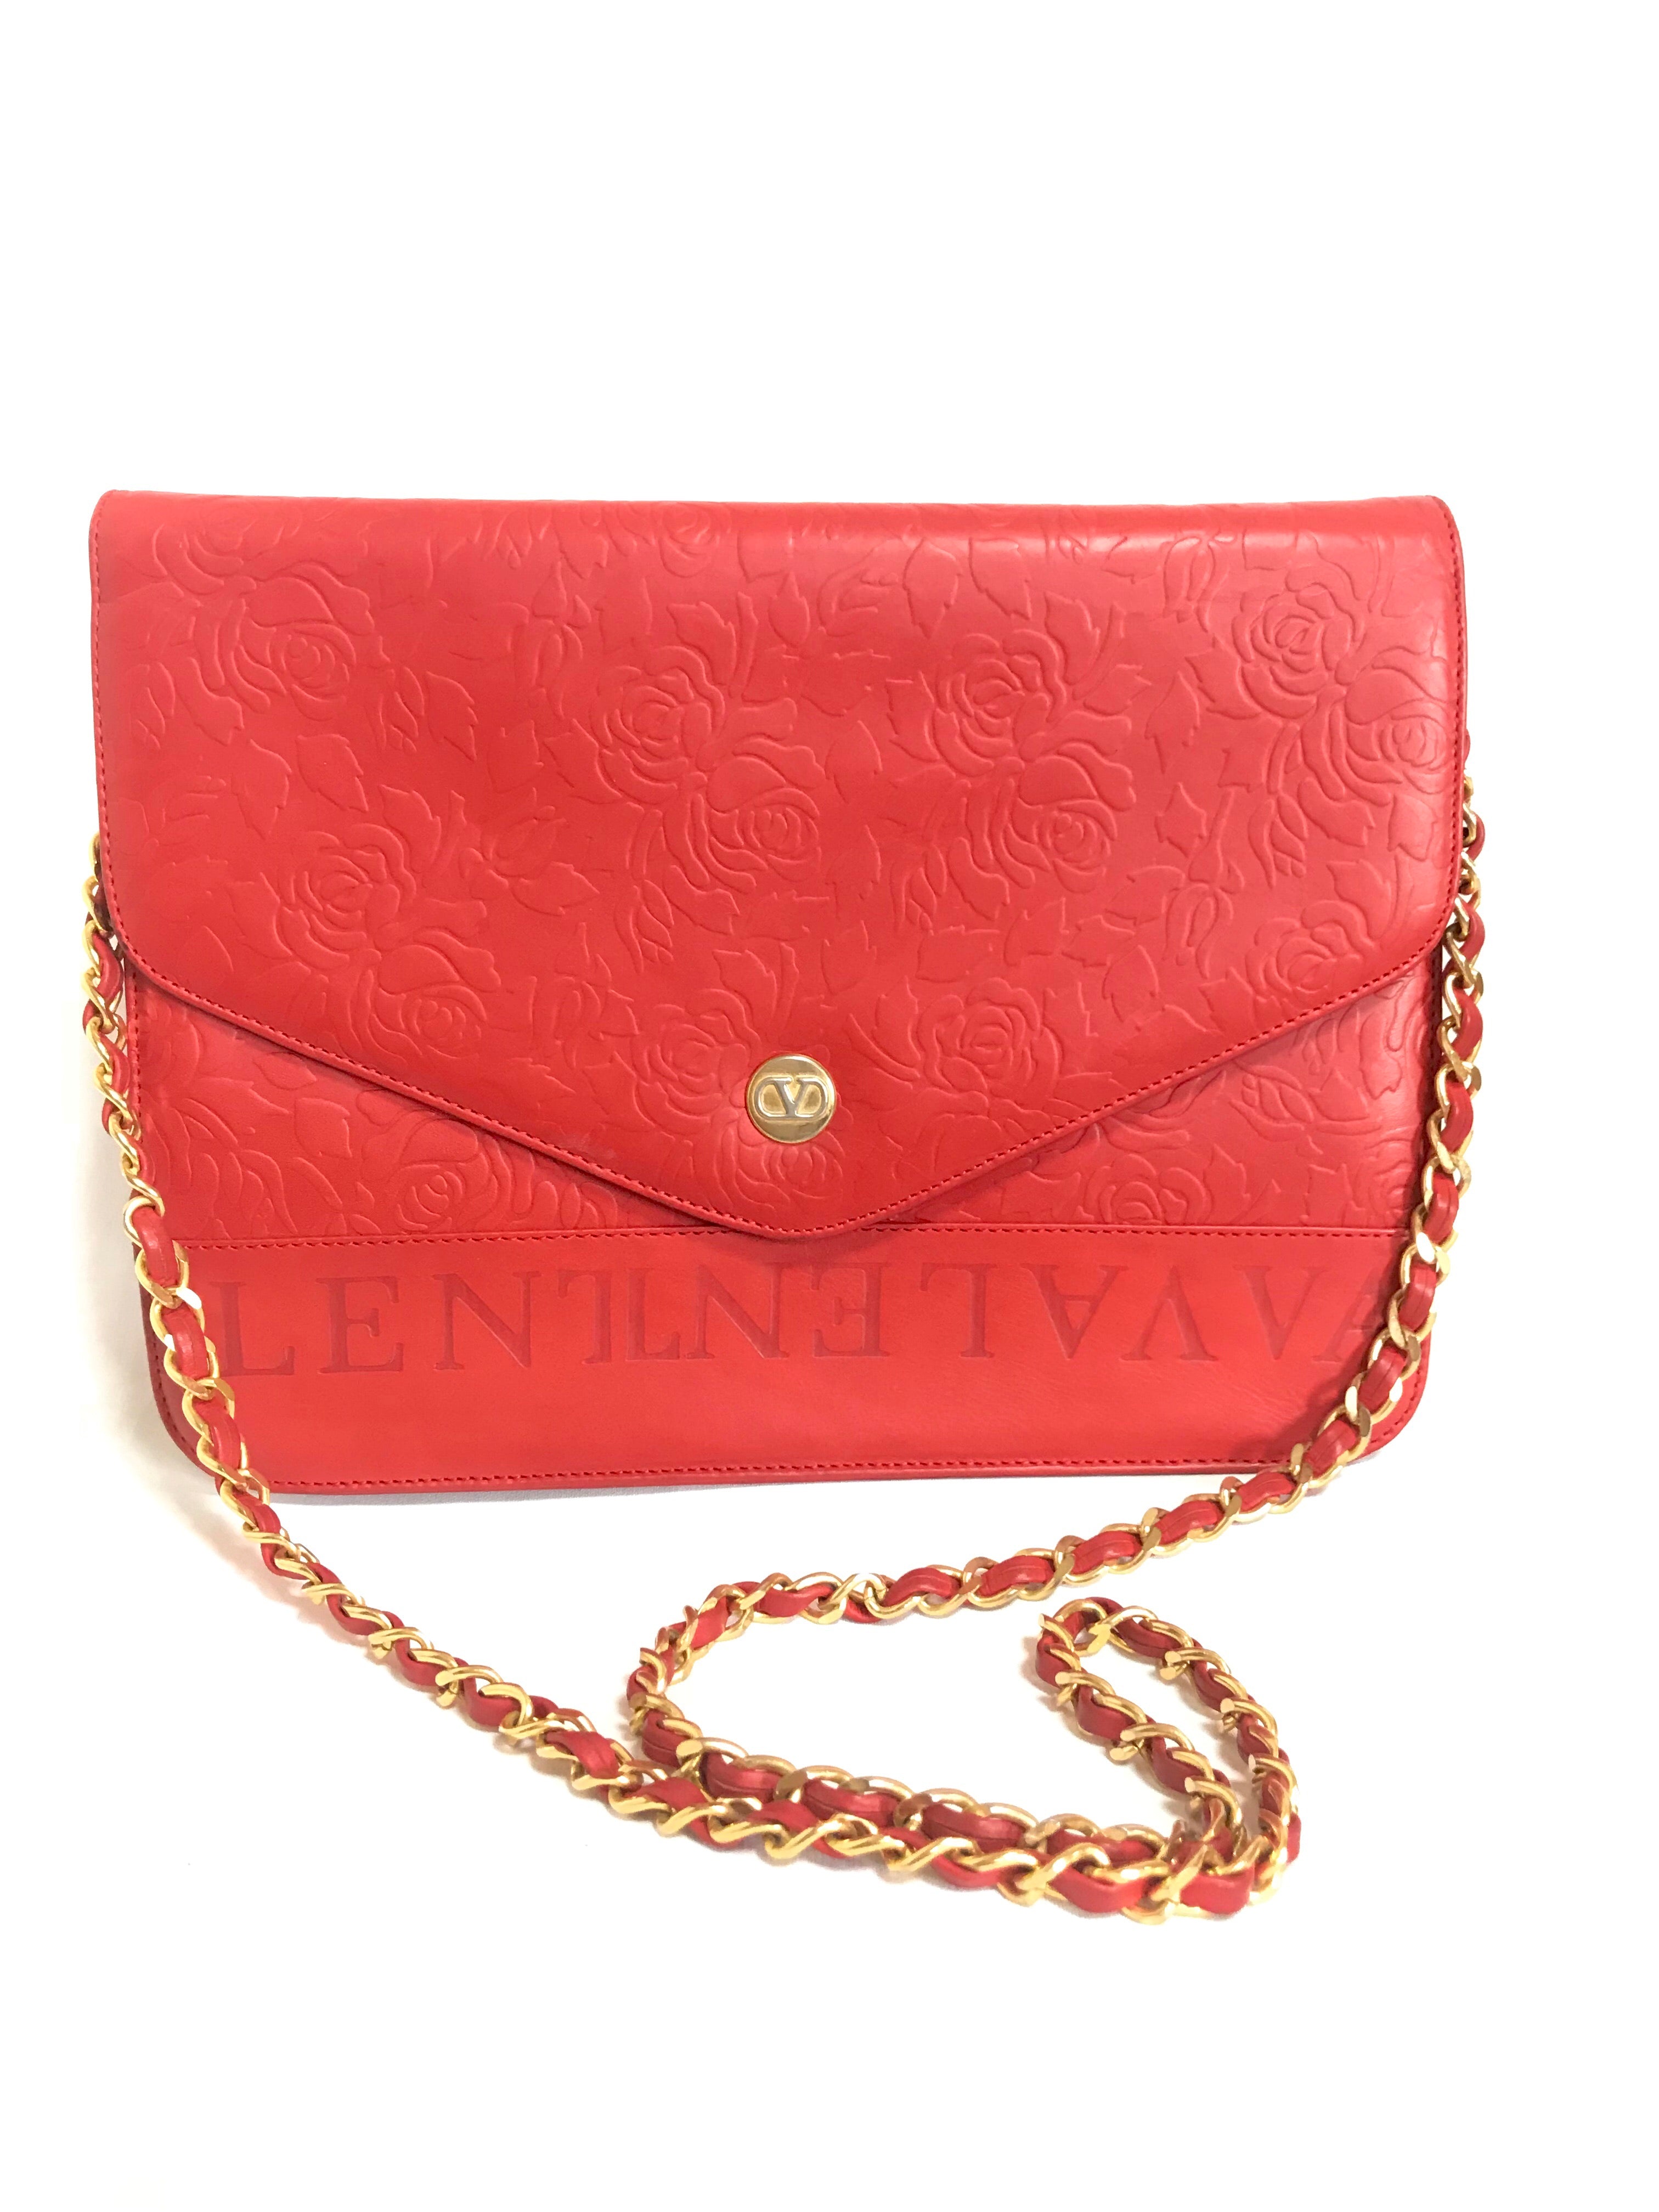 Vintage Etro Designer Handbag Floral Design Leather Handle/ Gold Chain!